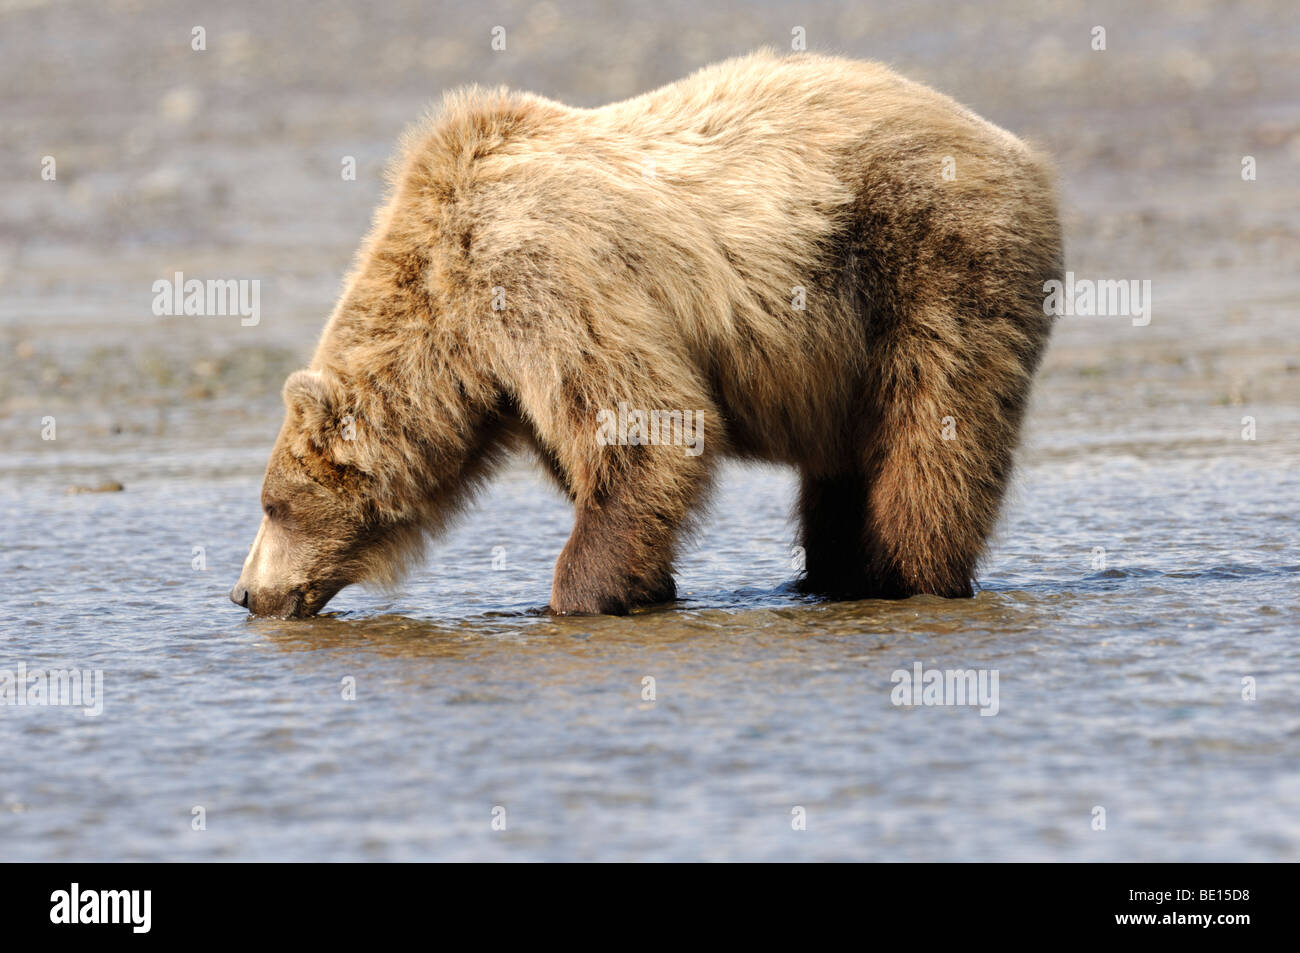 Stock Foto von einem Braunbären Trinkwasser in einer Bucht, Lake-Clark-Nationalpark, Alaska, 2009. Stockfoto